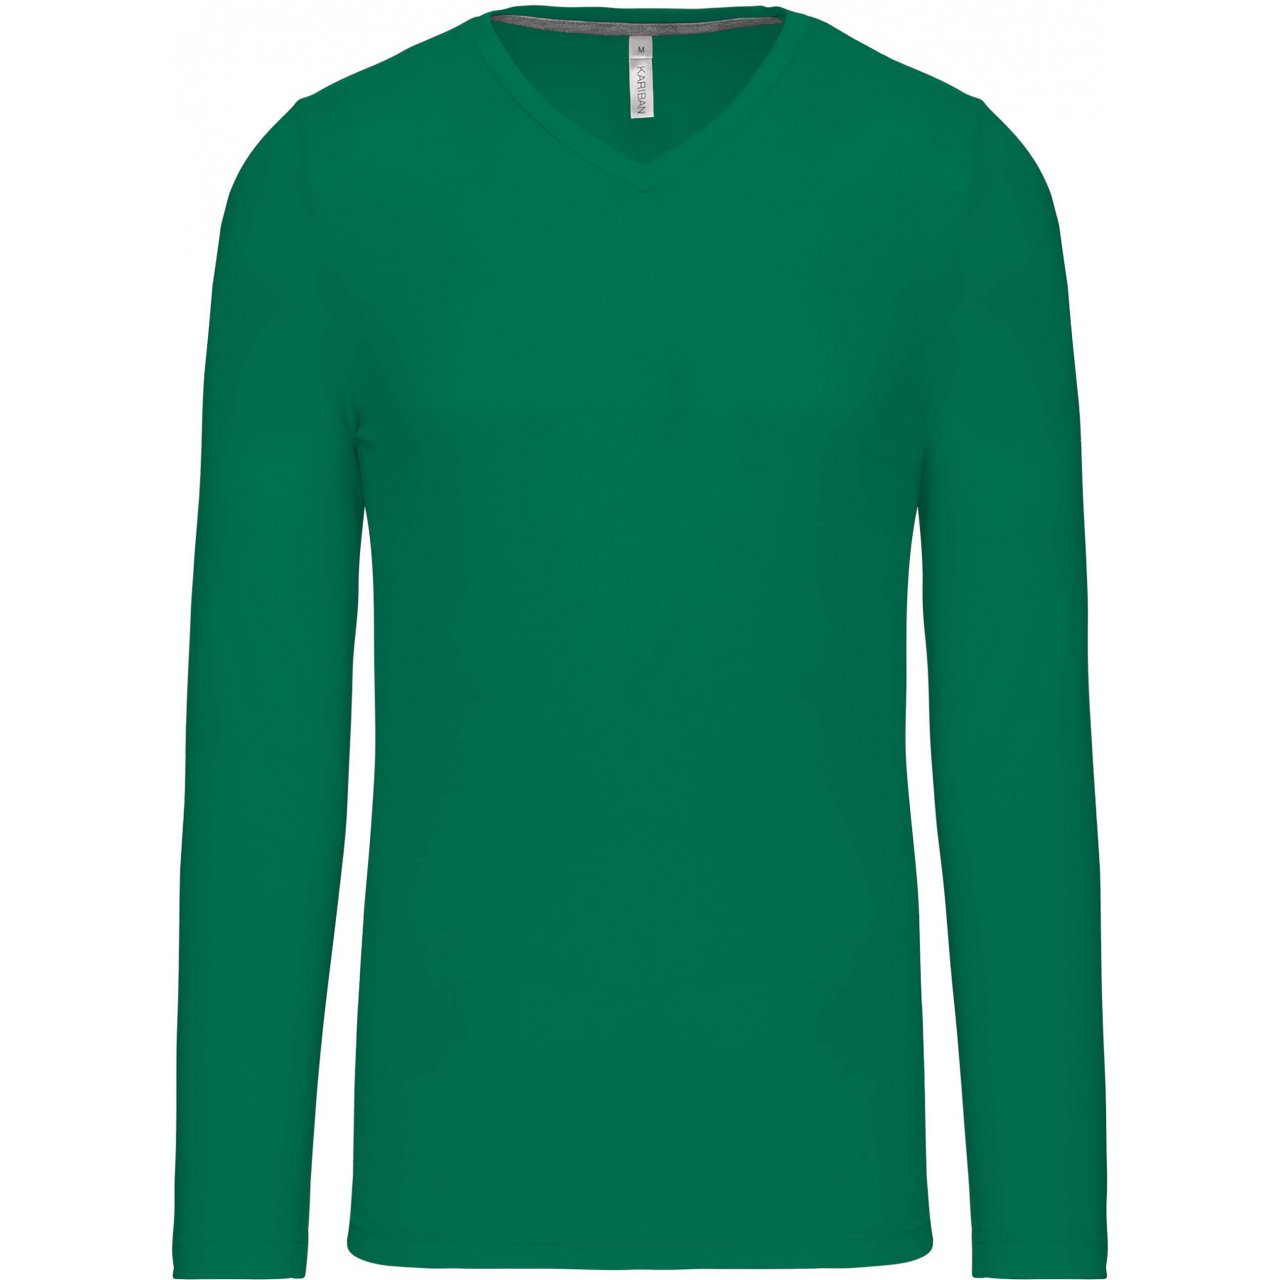 Pánské tričko Kariban dlouhý rukáv V-neck - zelené, XL